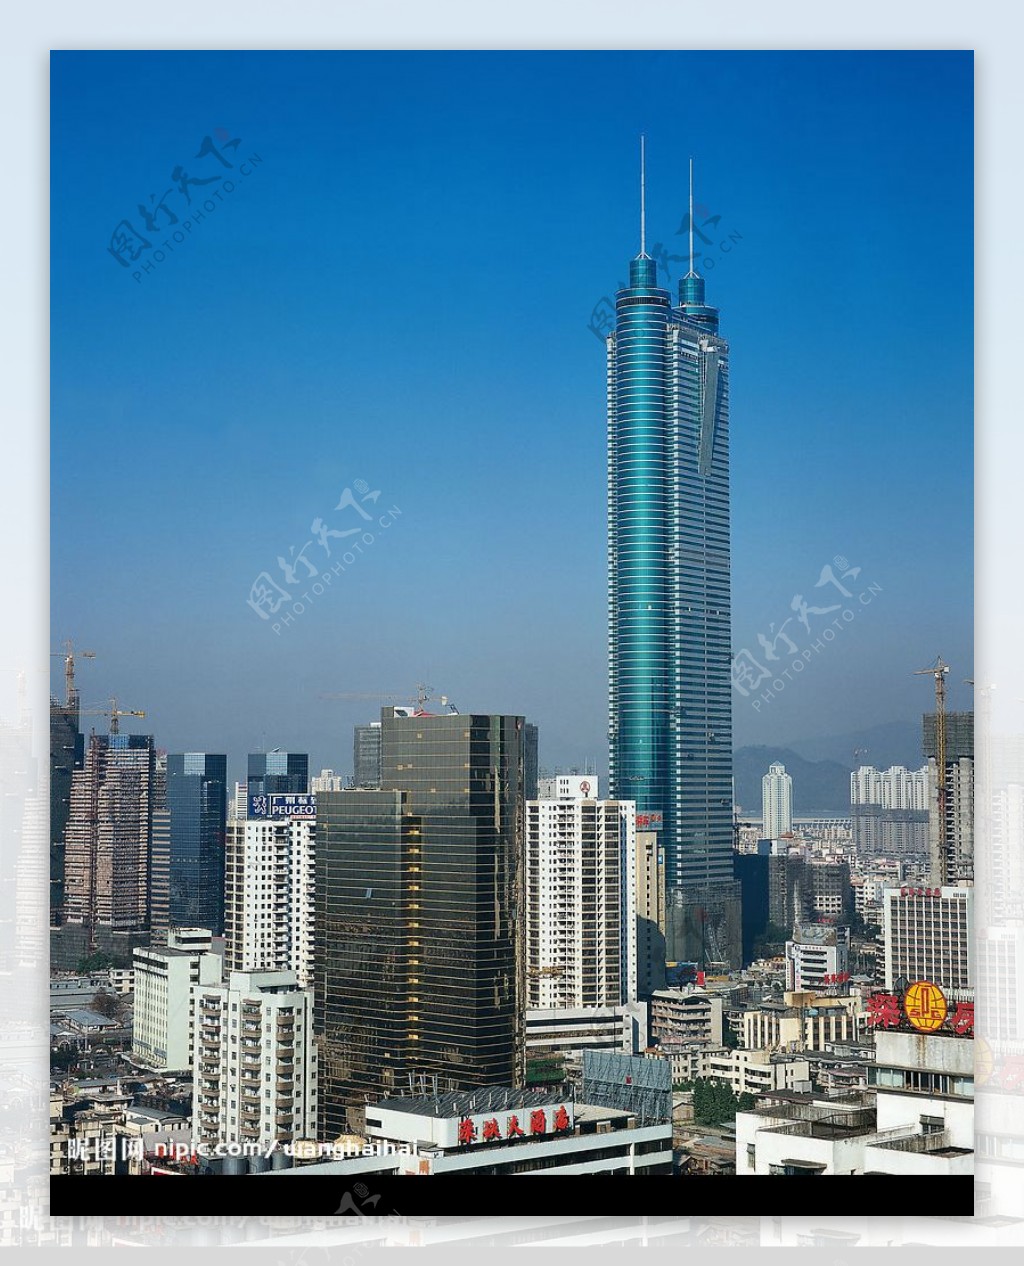 深圳城市素材高楼大厦图片